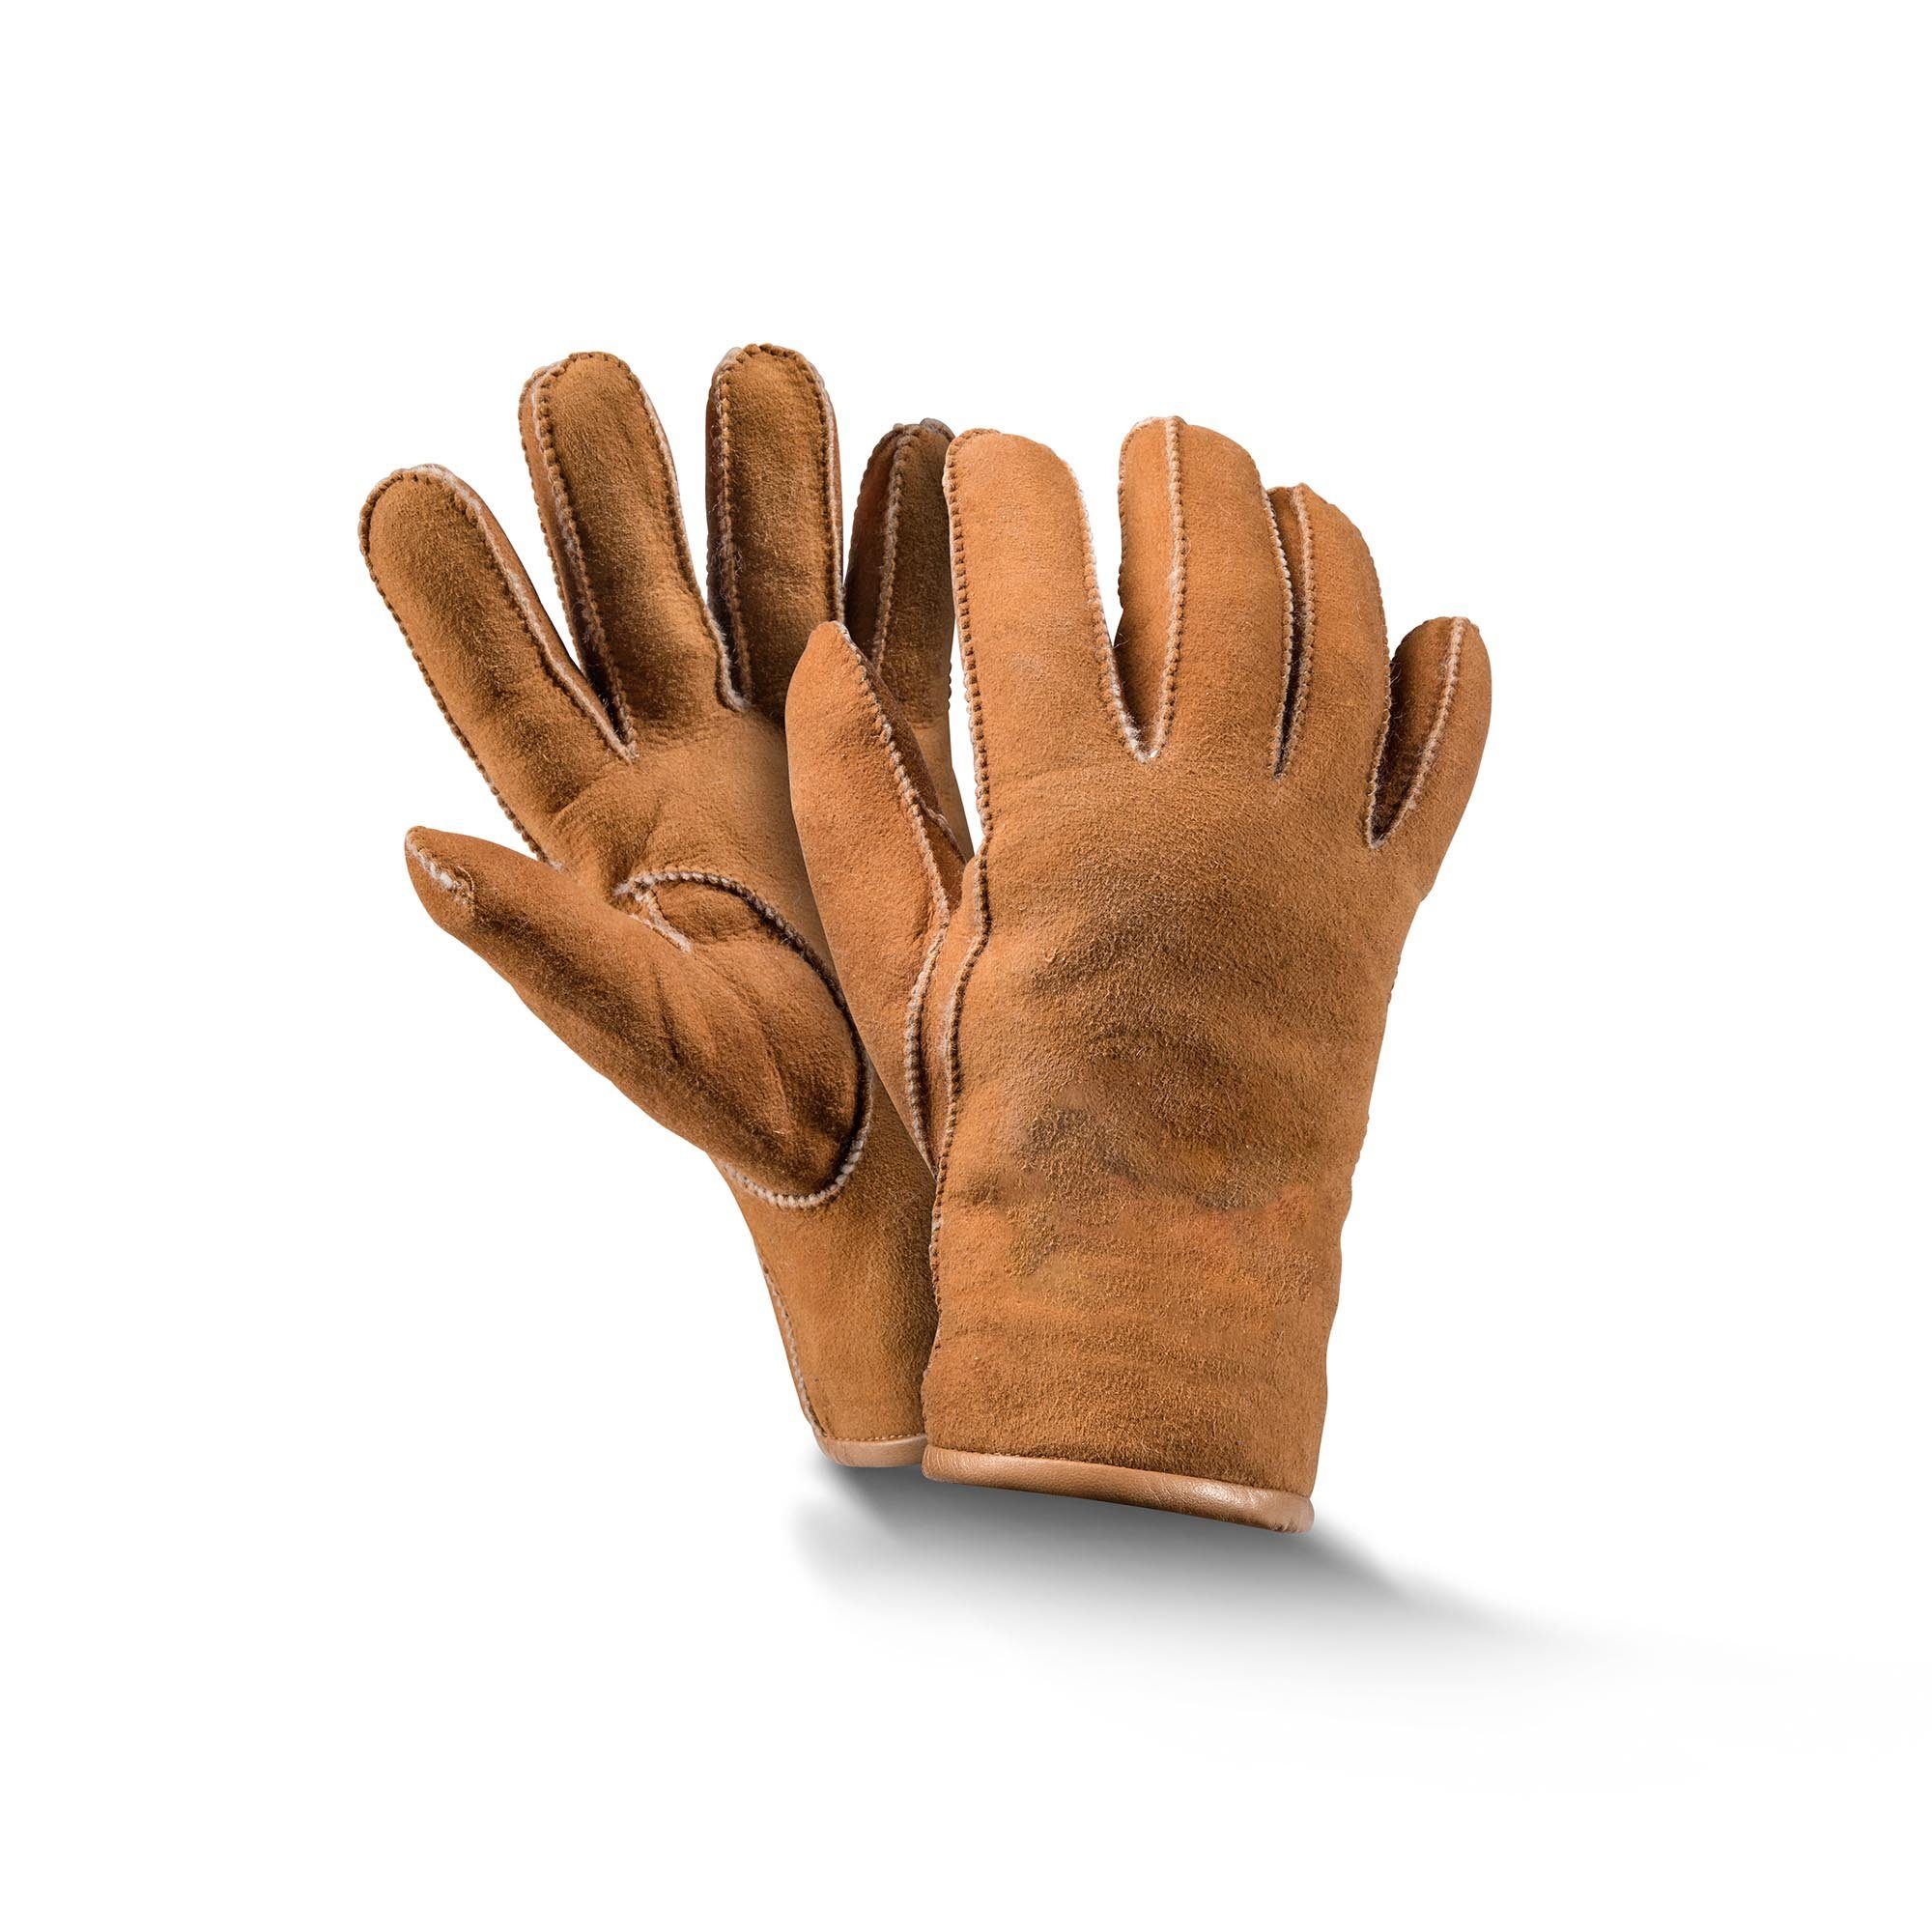 Fellhof Baumwollhandschuhe Fingerhandschuhe braun/ schwarz/ Basic grau Handschuhe 6-10 Gr